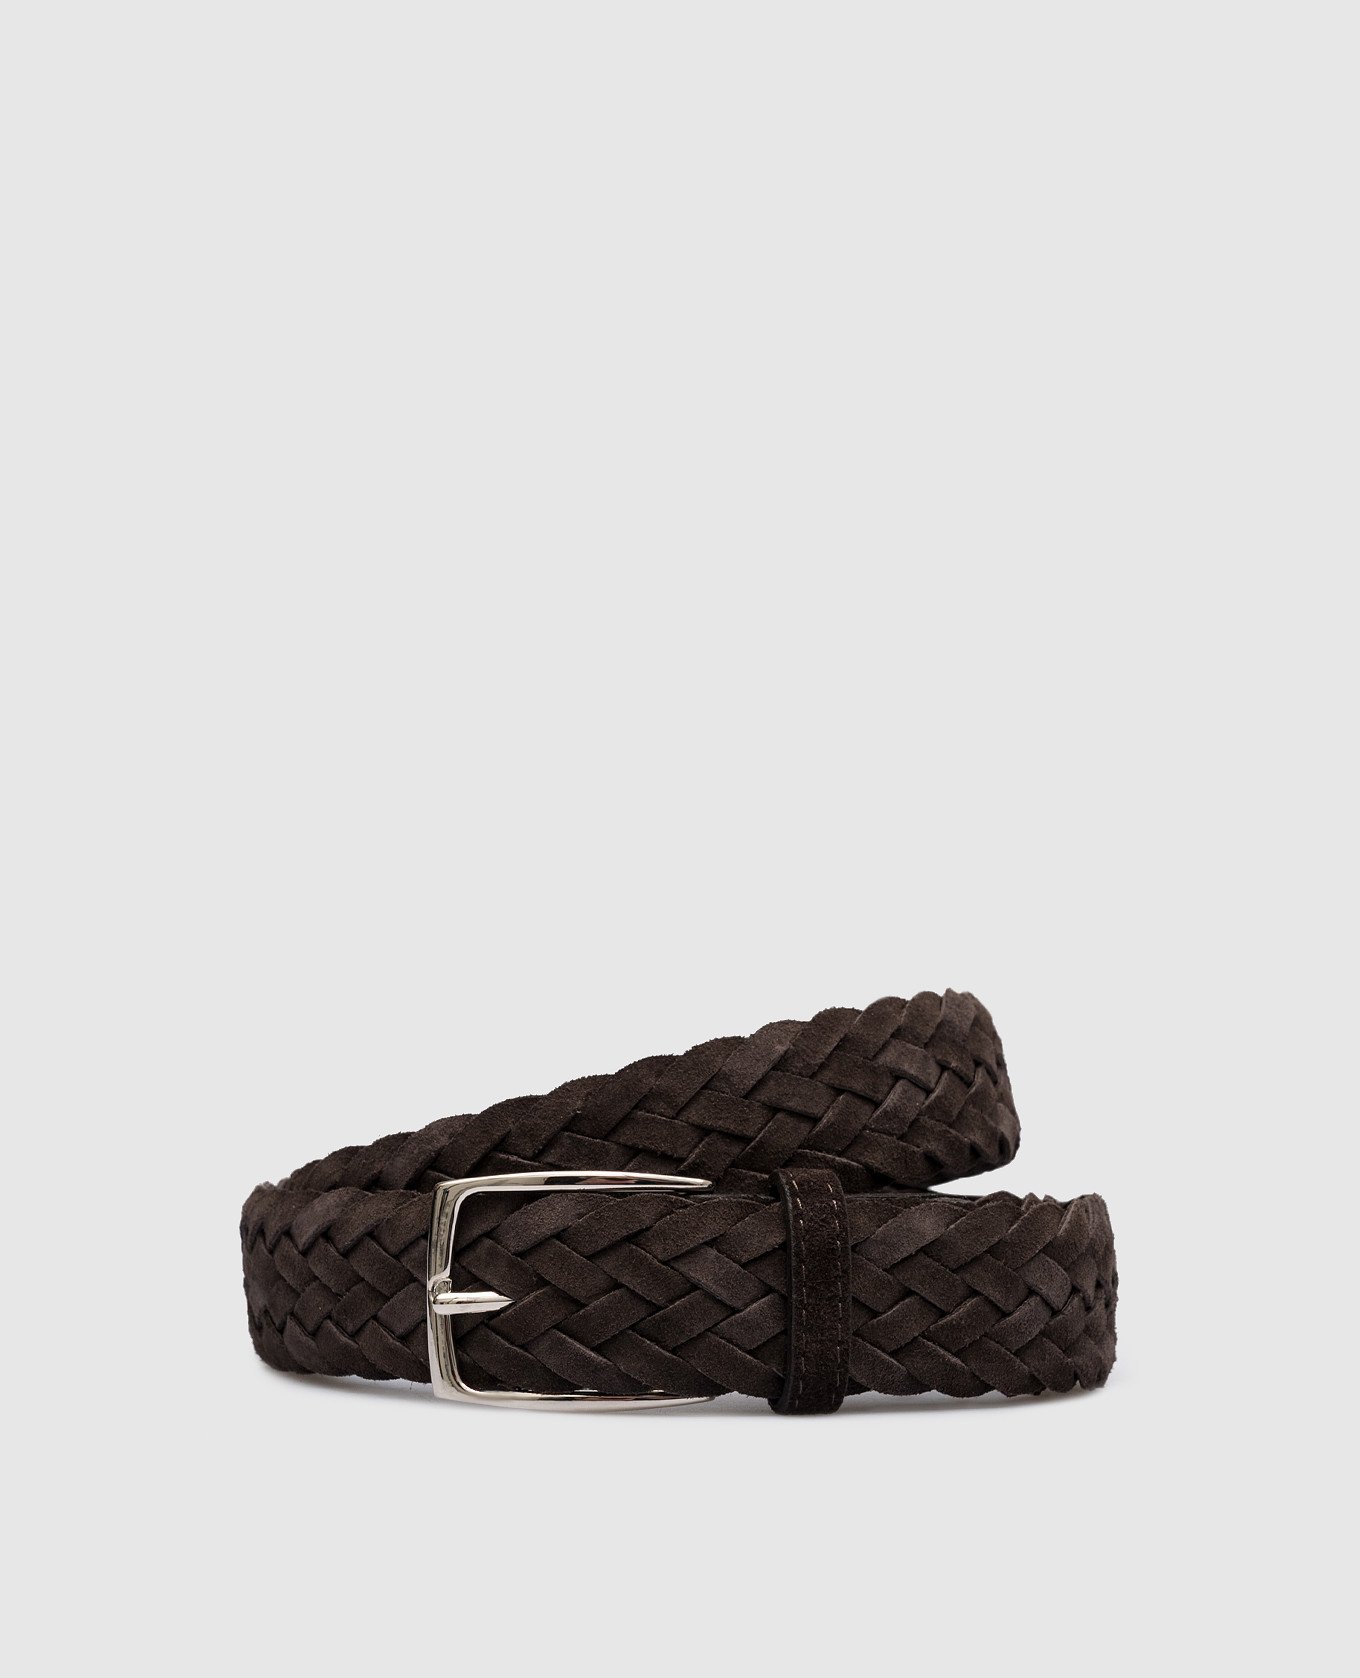 Brown suede braided belt